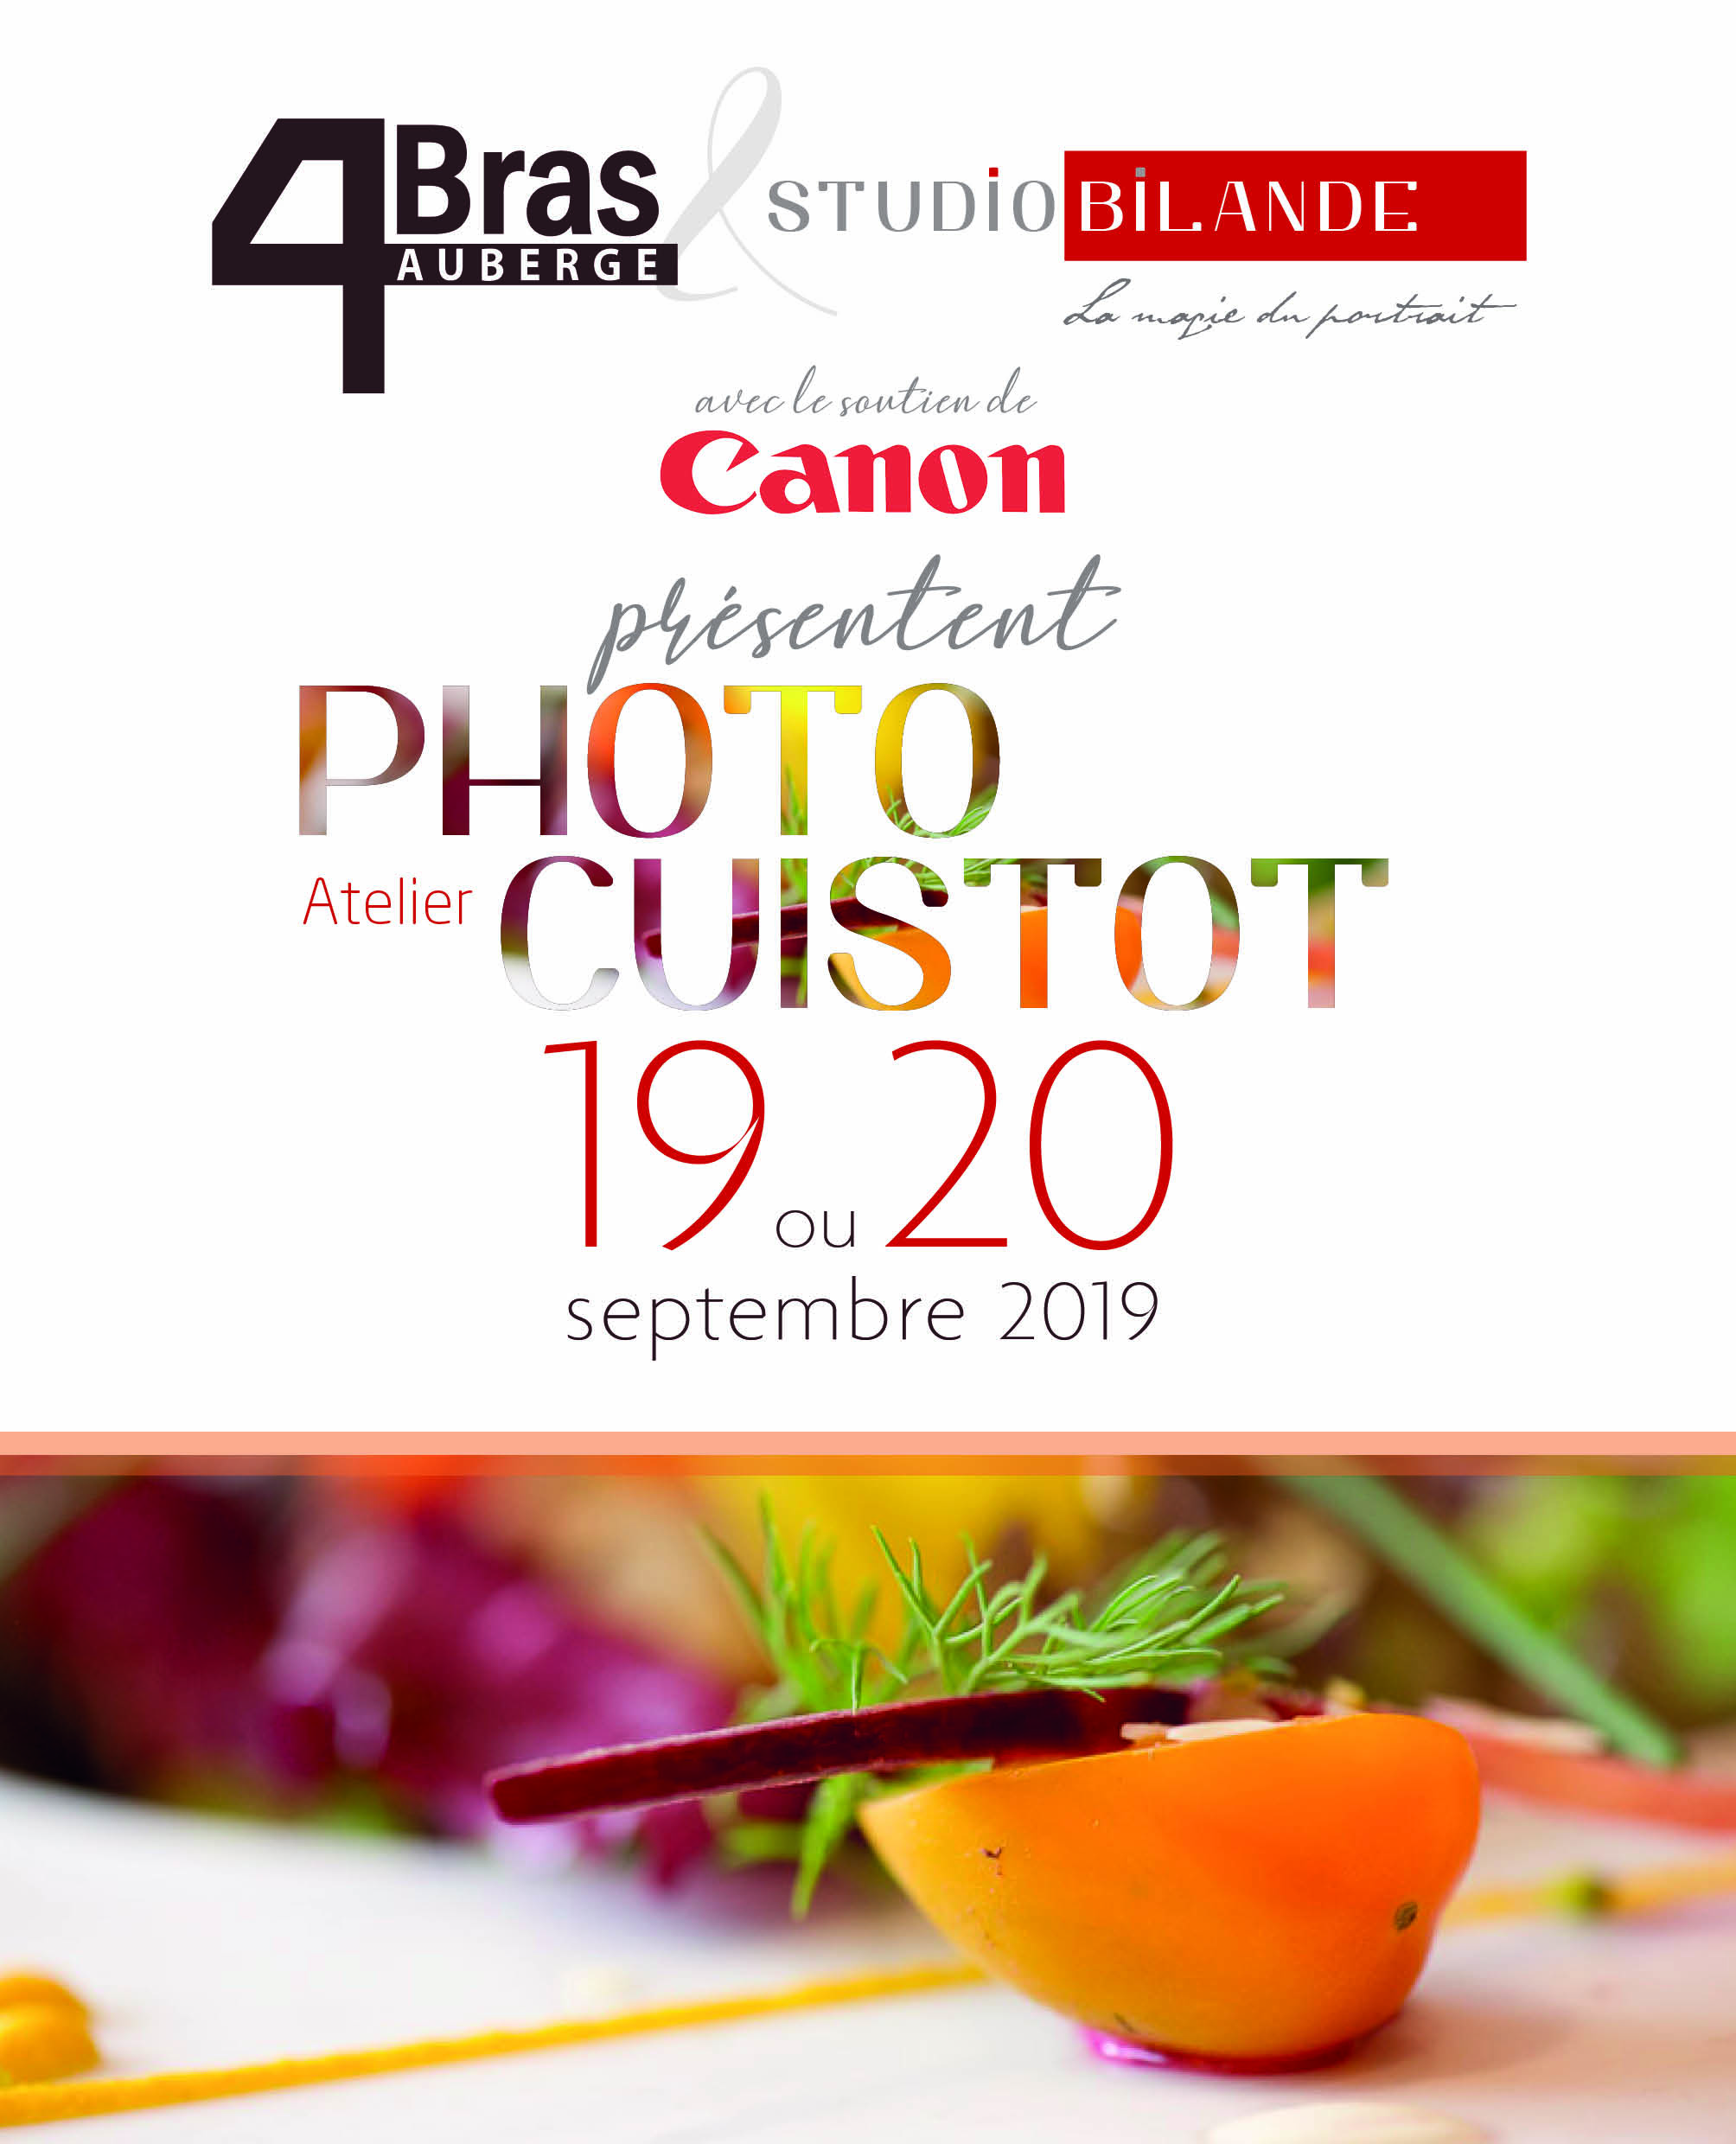 Atelier Photo le 19 et 20 septembre 2019 par Studio Bilande et l'Auberge des 4 Bras à Philippeville